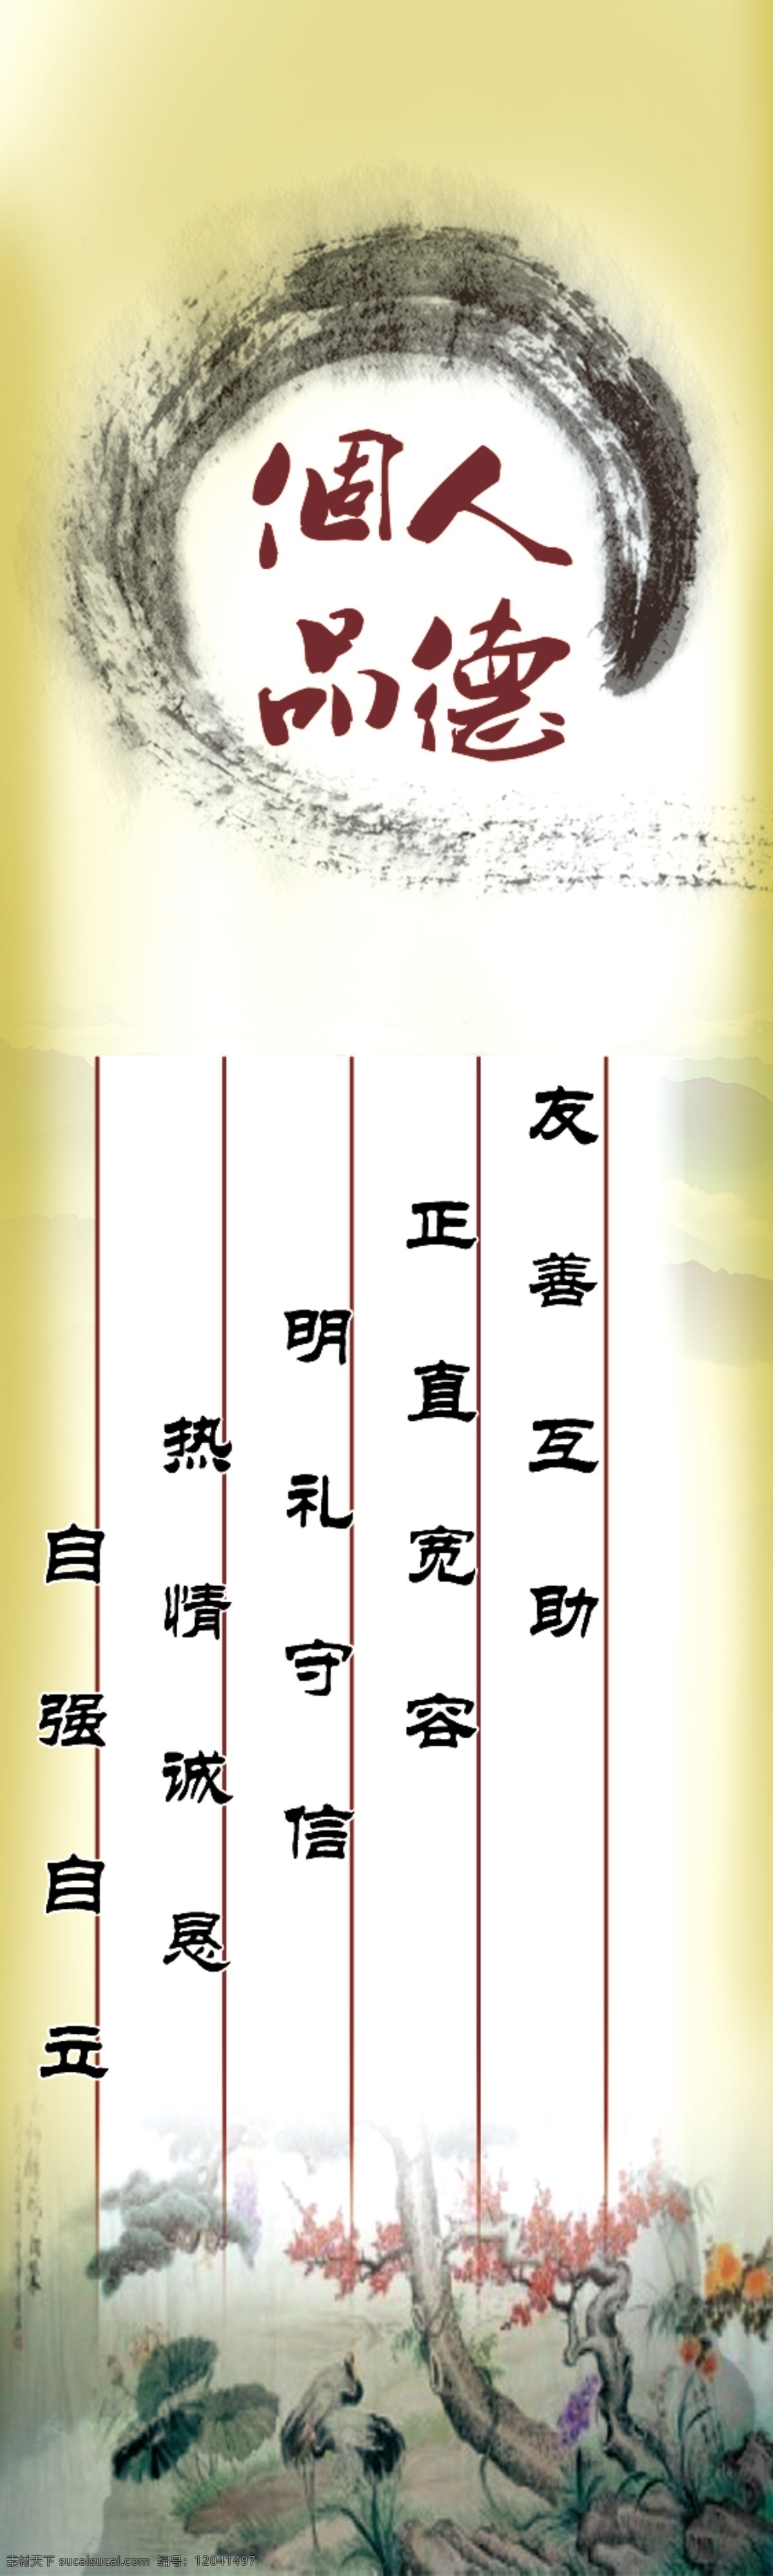 个人品德 水墨 中国风 文词 风景 展板模板 广告设计模板 源文件